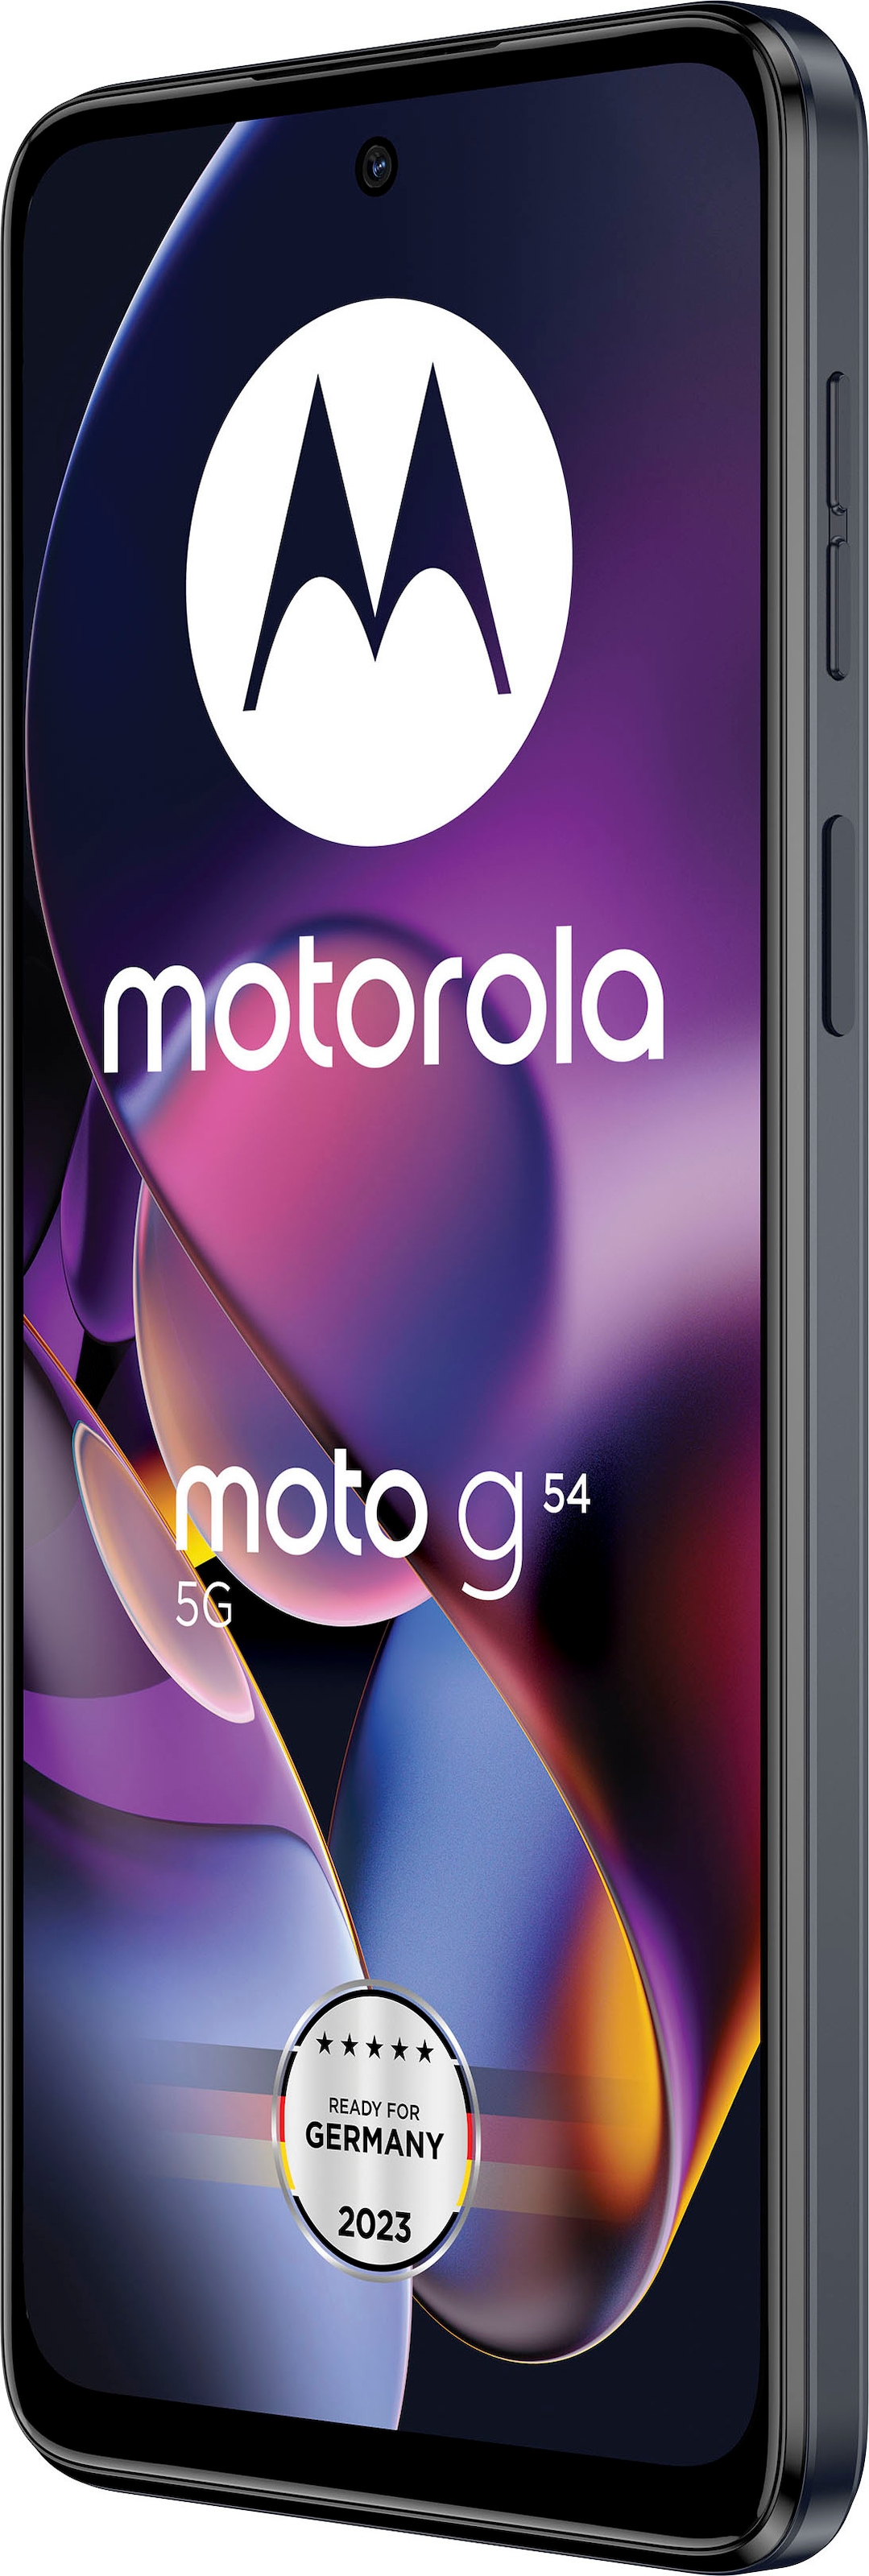 kaufen Zoll, 50 Motorola OTTO Speicherplatz, cm/6,5 Kamera Smartphone 16,51 GB g54«, moto 256 MP mint grün, jetzt bei »MOTOROLA